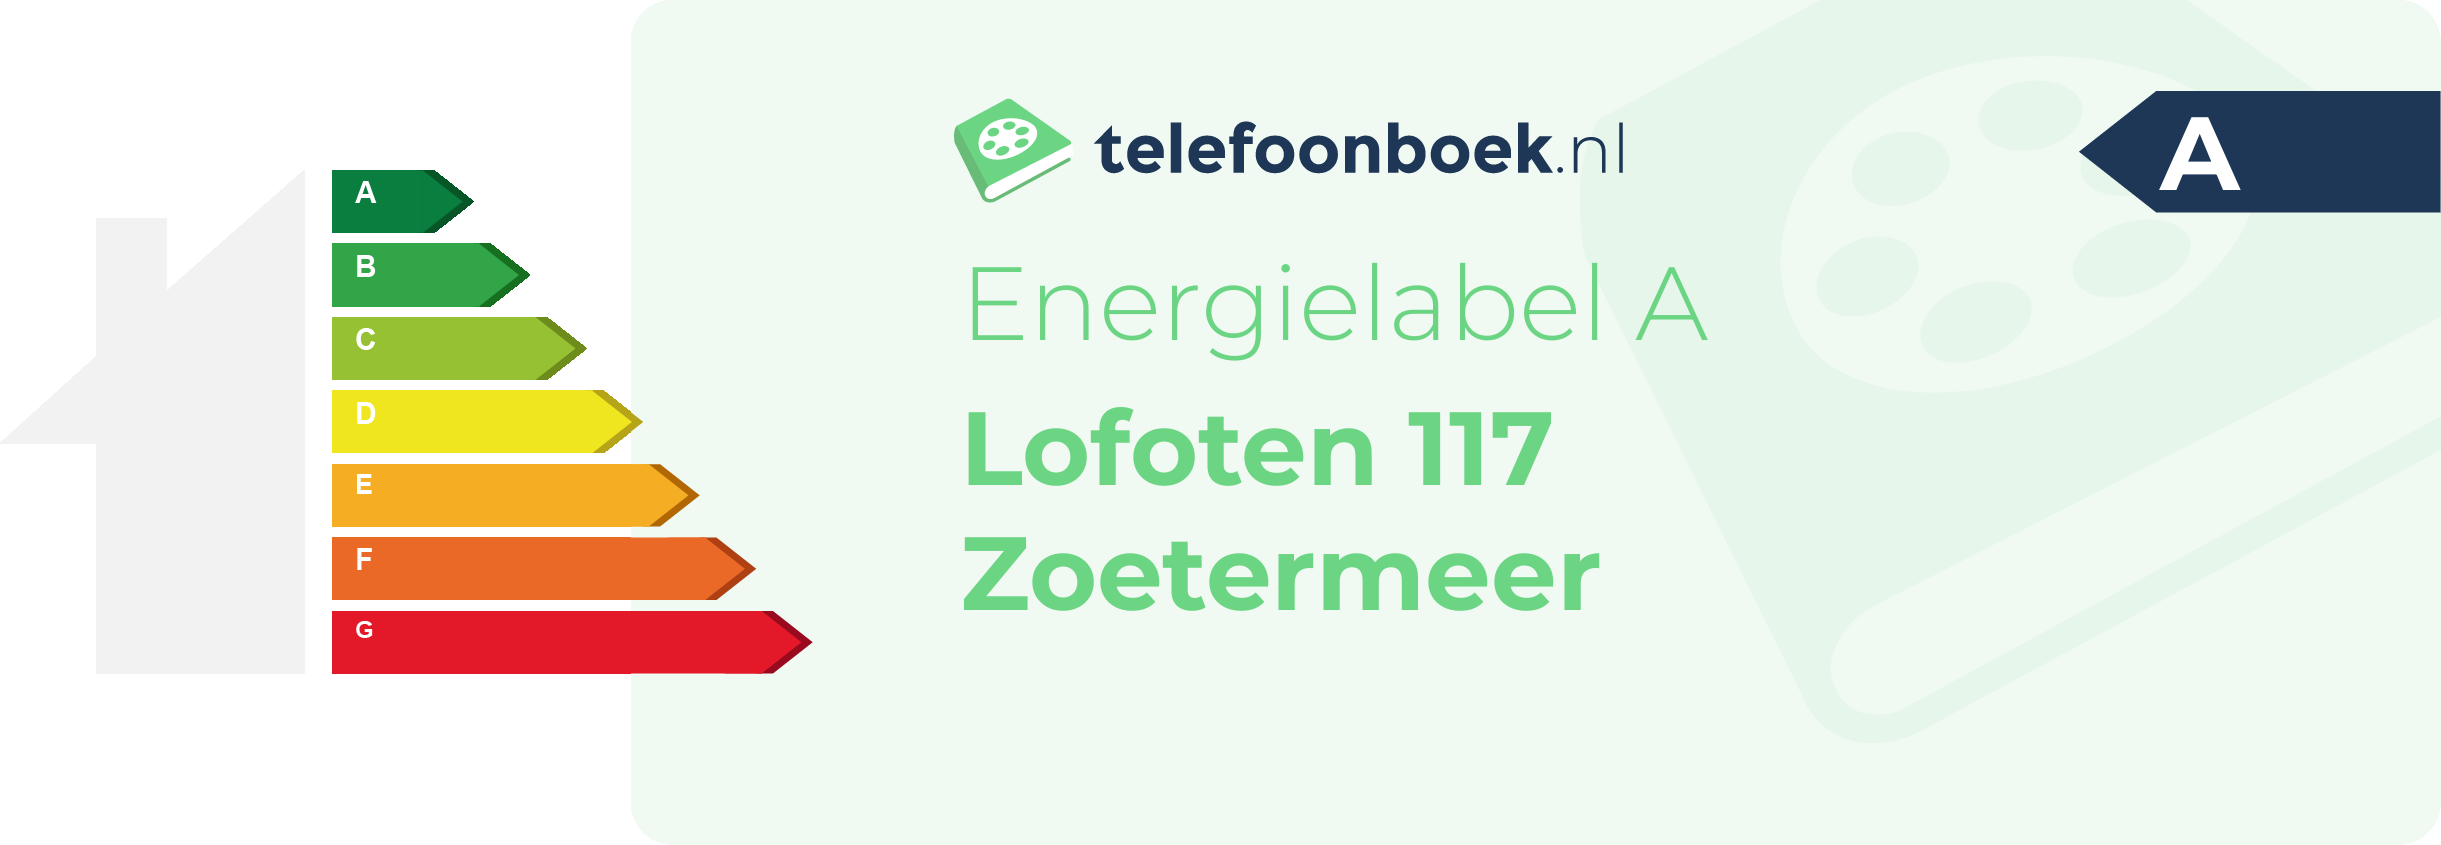 Energielabel Lofoten 117 Zoetermeer